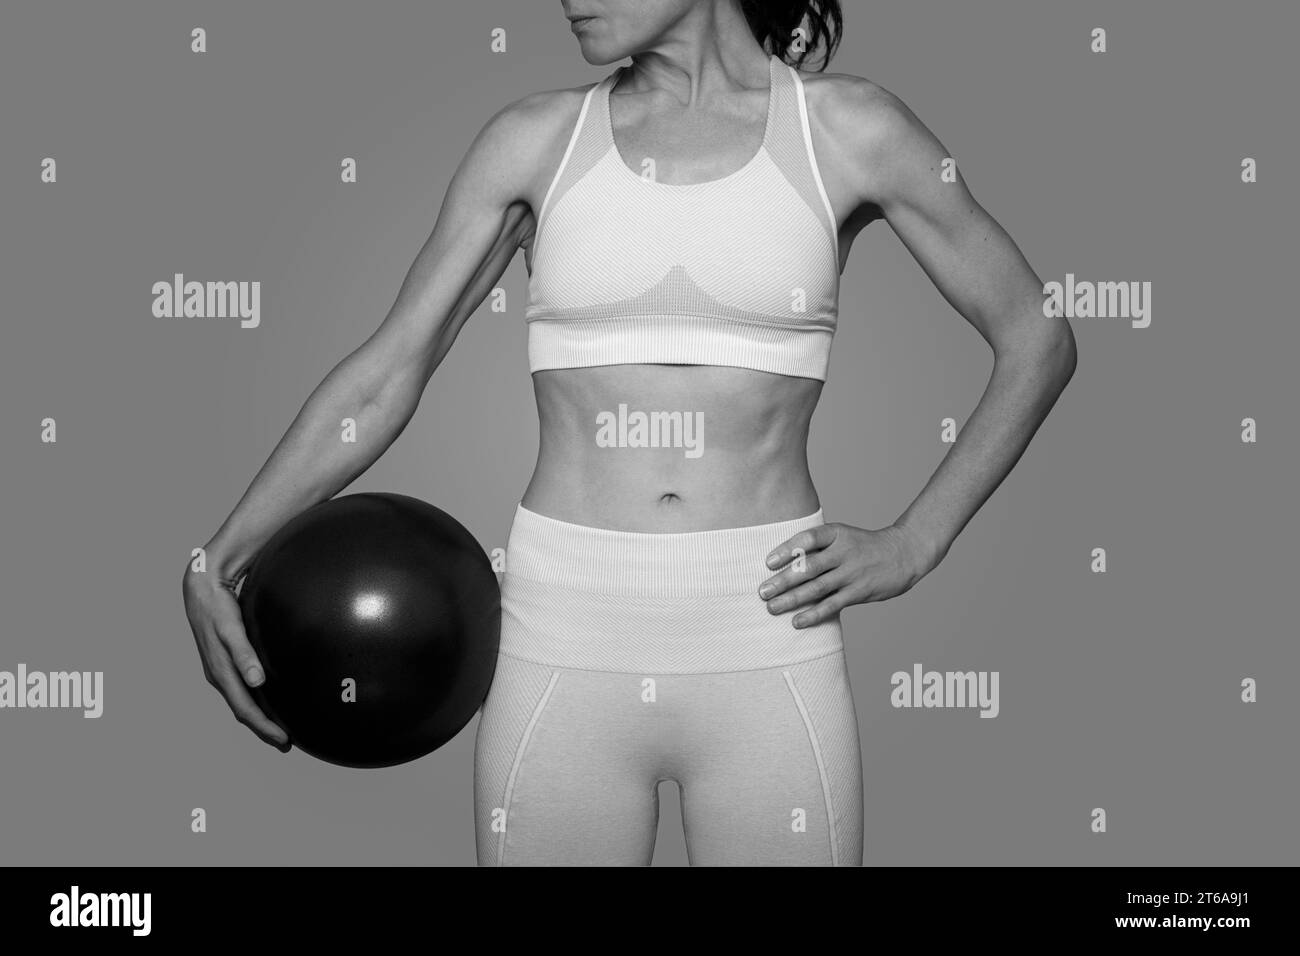 Eine Frau, die einen Pilatesball hält, schwarz-weiß. Stockfoto